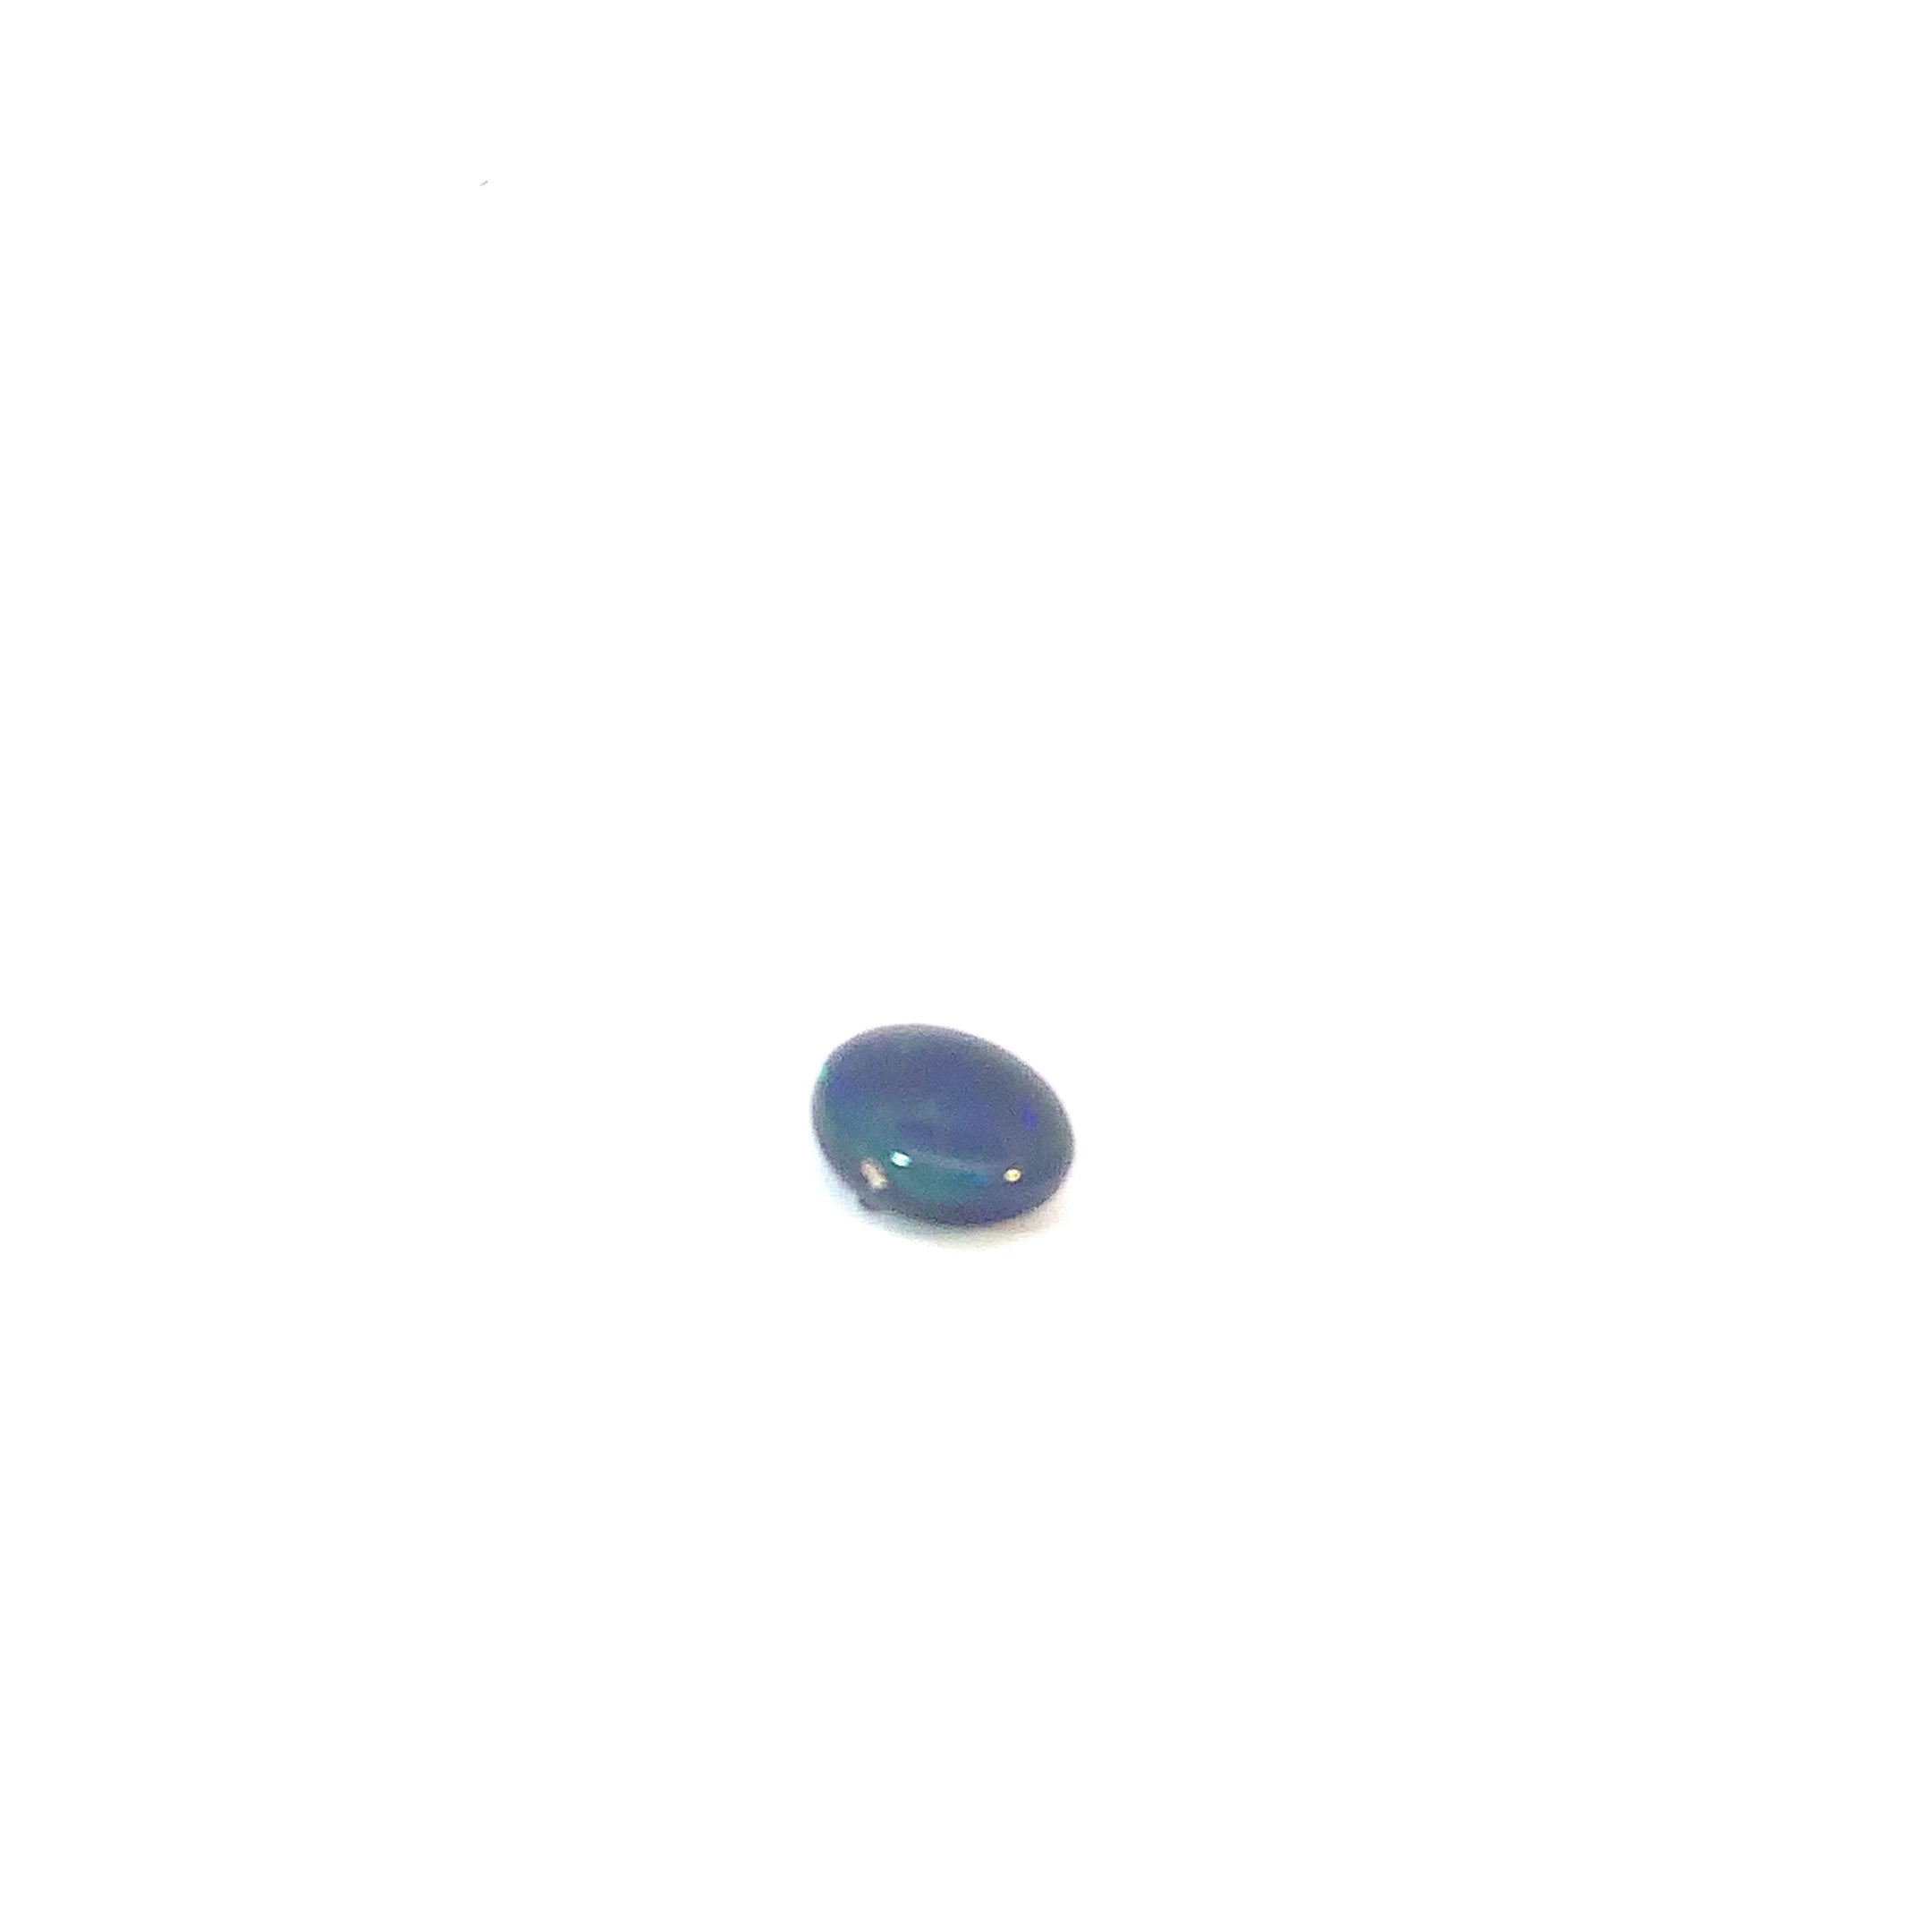 Green Black 3.32ct Oval Opal - Masterpiece Jewellery Opal & Gems Sydney Australia | Online Shop